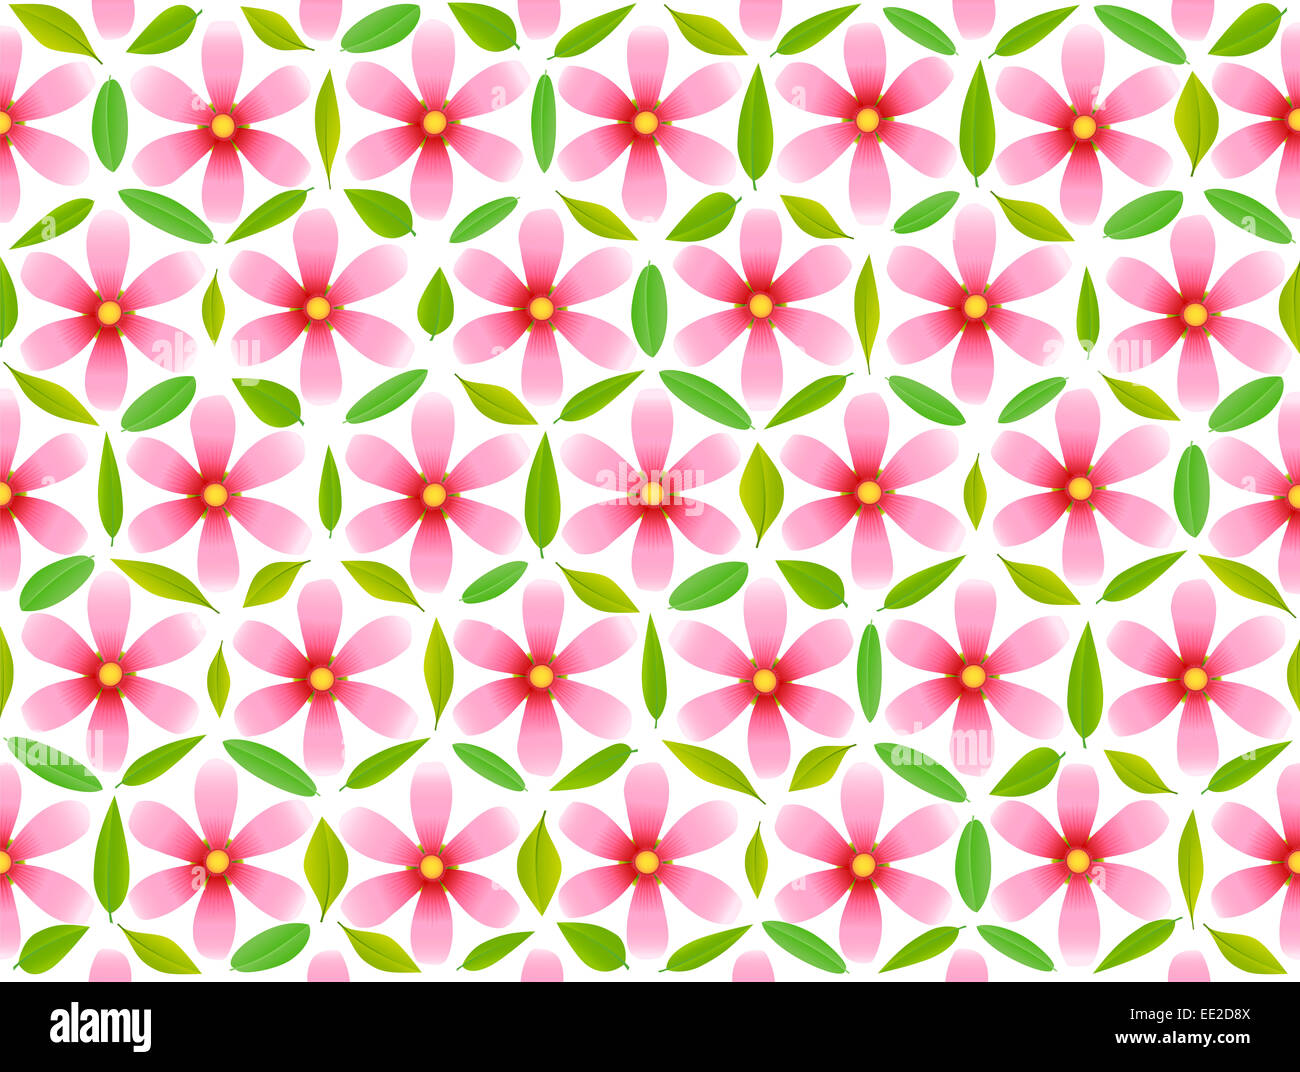 Fiore della Vita pattern, composta da fiori di colore rosa e foglie verdi. Foto Stock